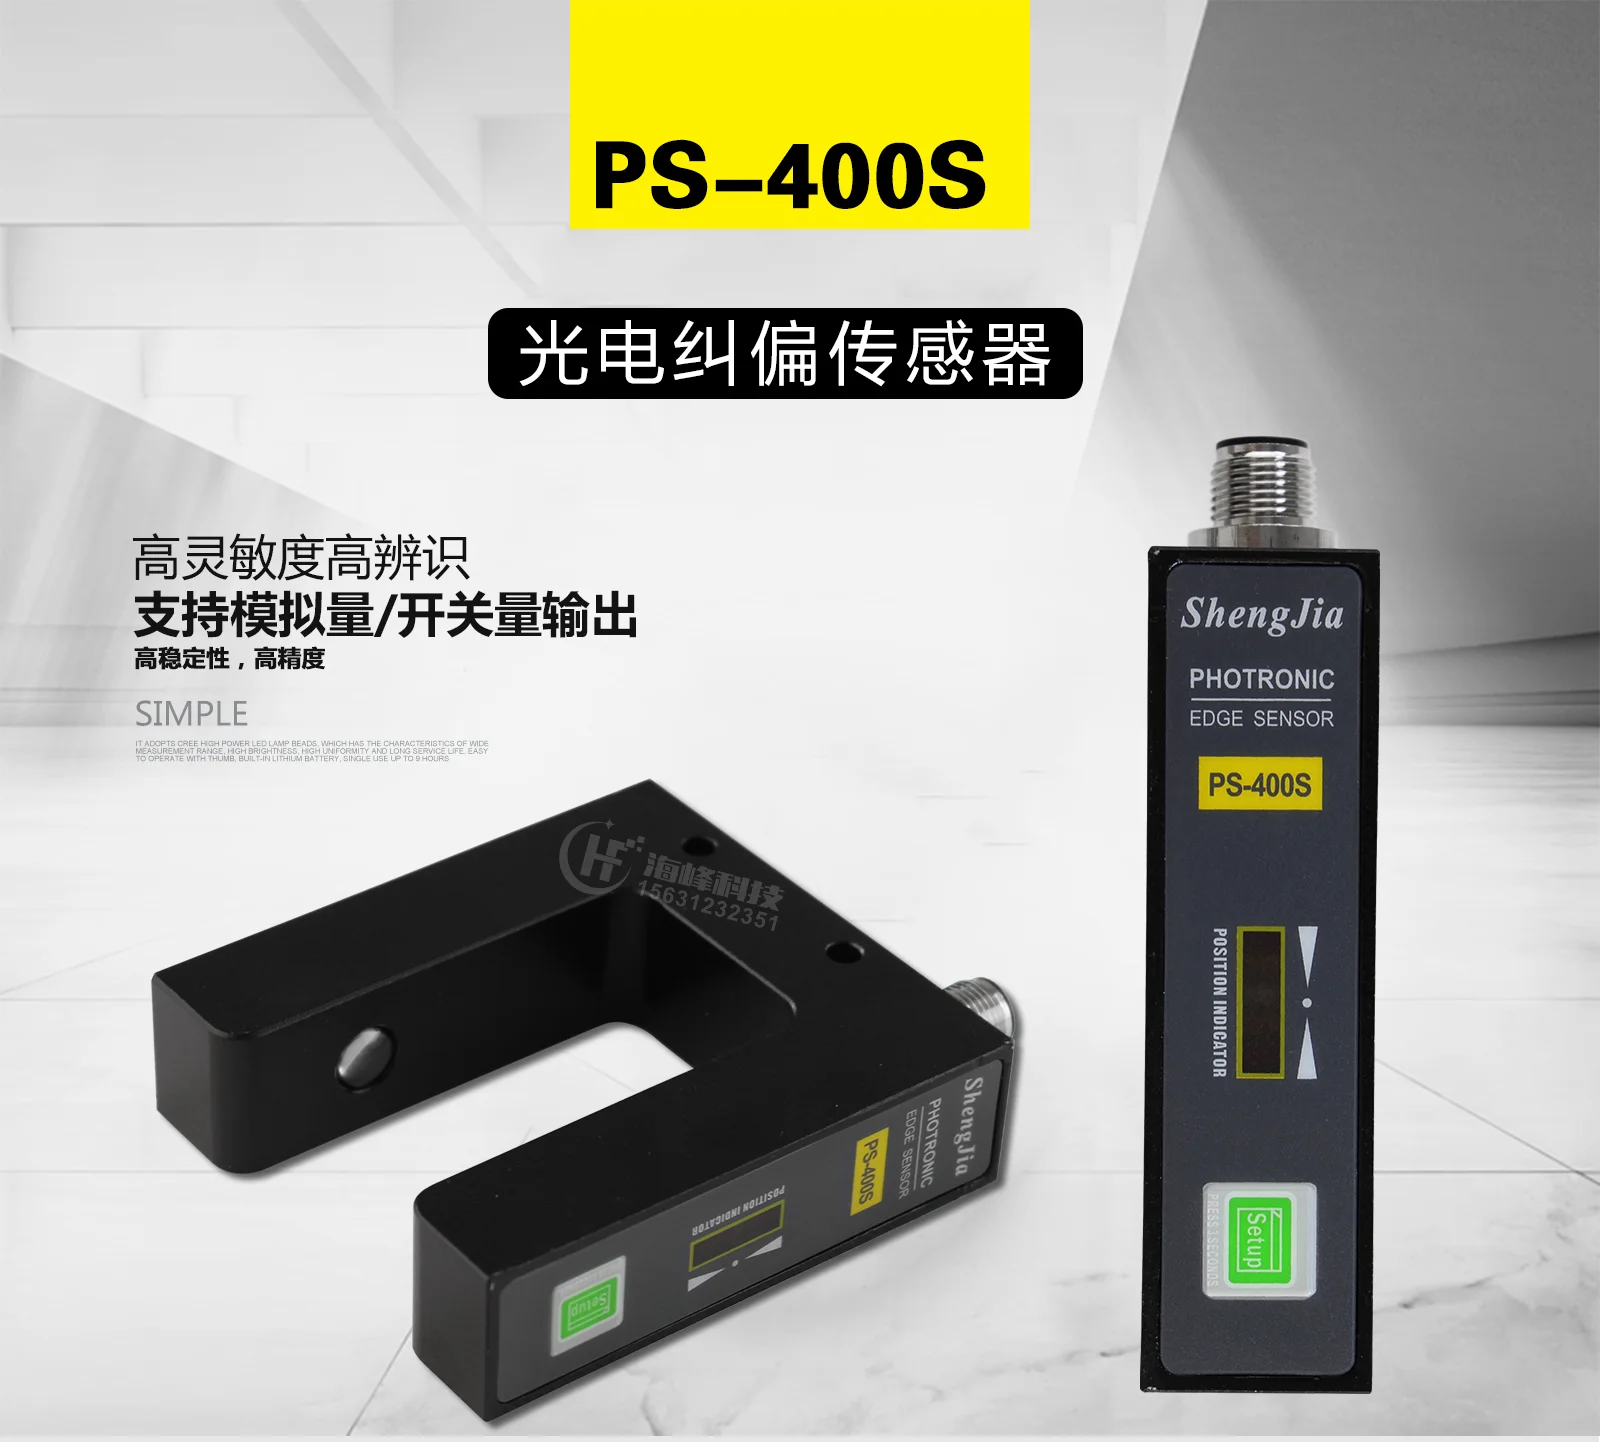 

Датчик коррекции PS-400S датчик коррекции Высокоточный коррекционный датчик фотоэлектрический коррекционный датчик